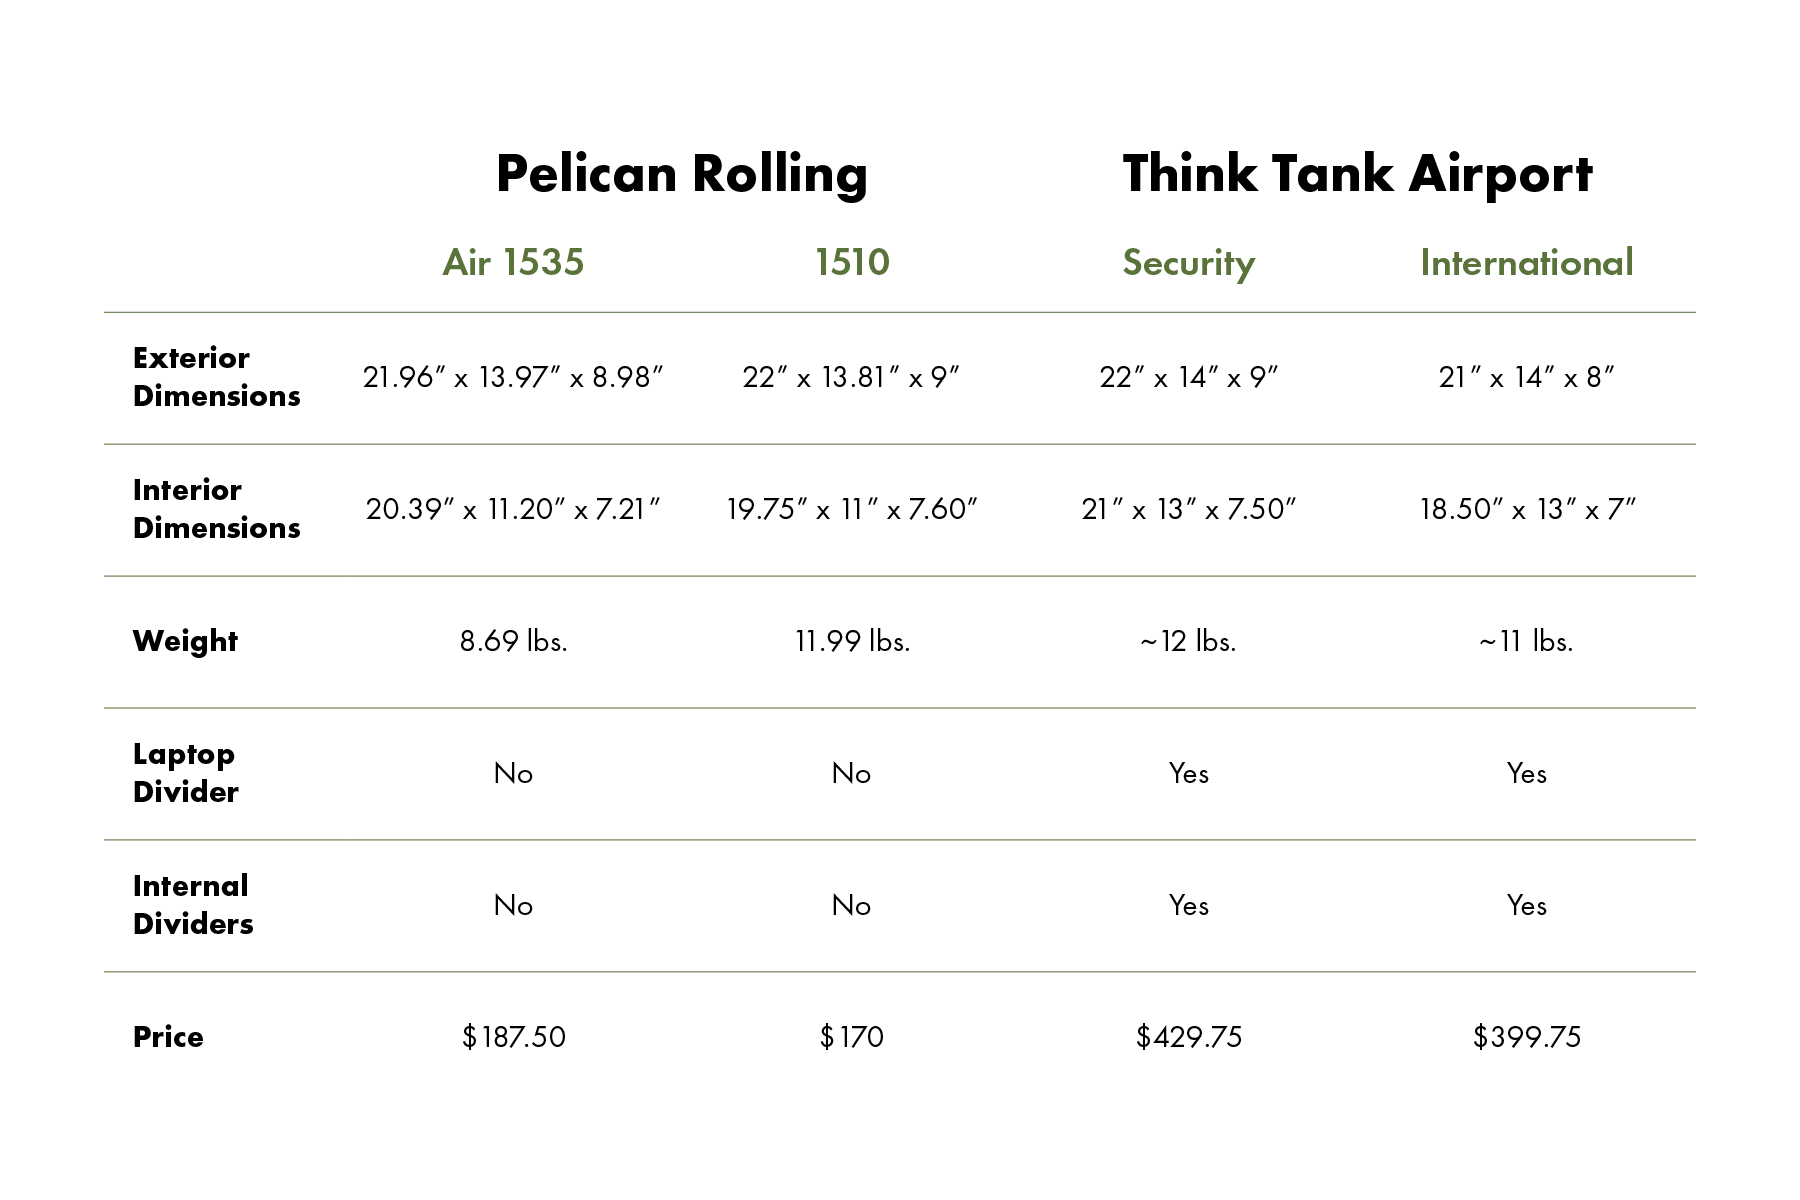 Pelican Case Chart